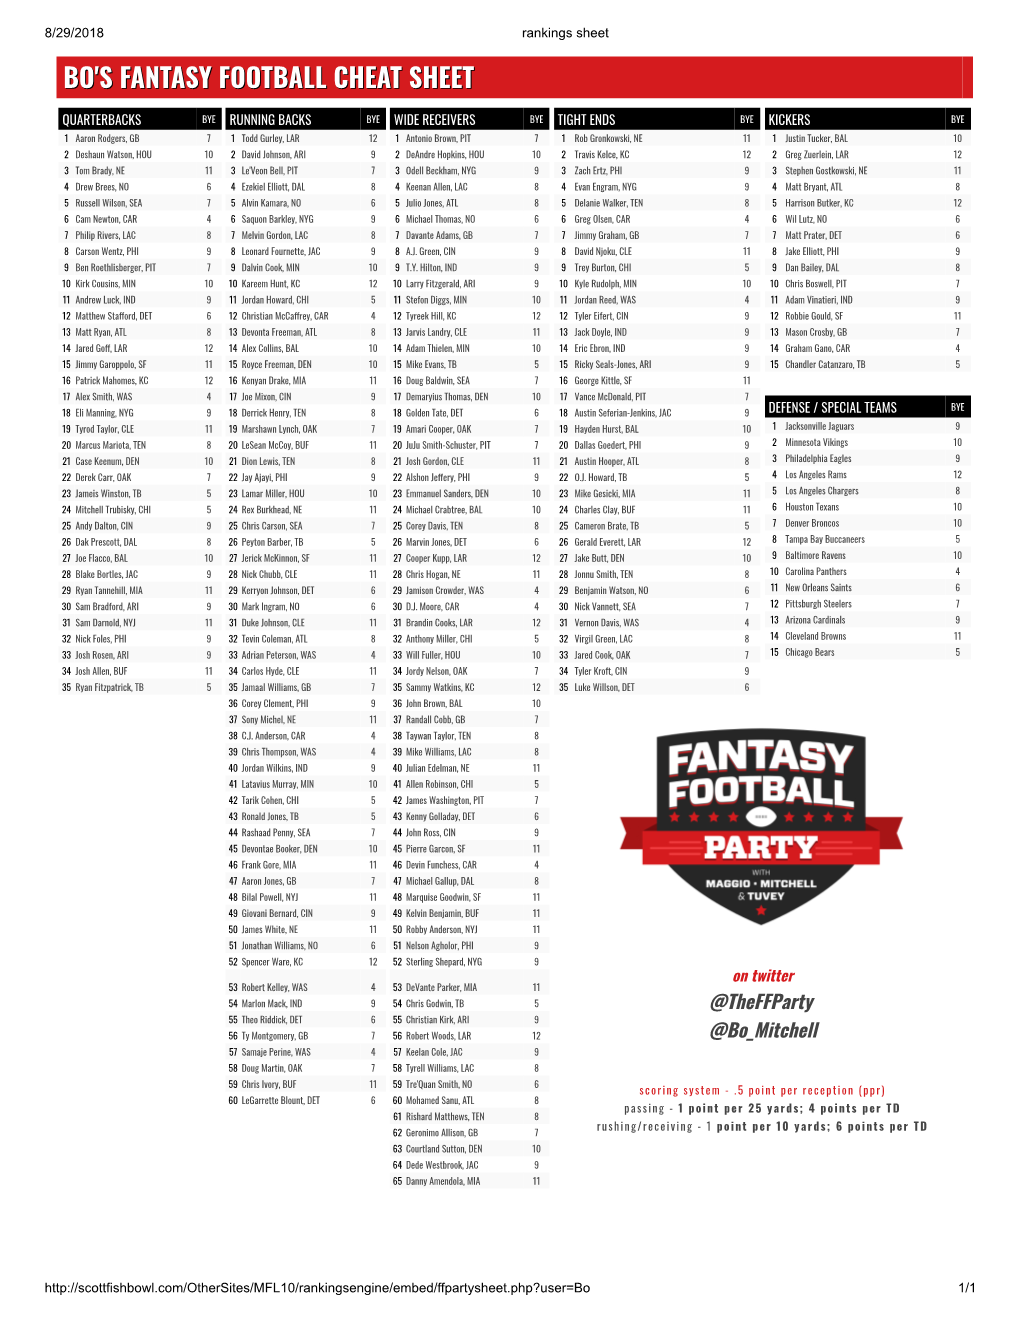 Bo's Fantasy Football Cheat Sheet